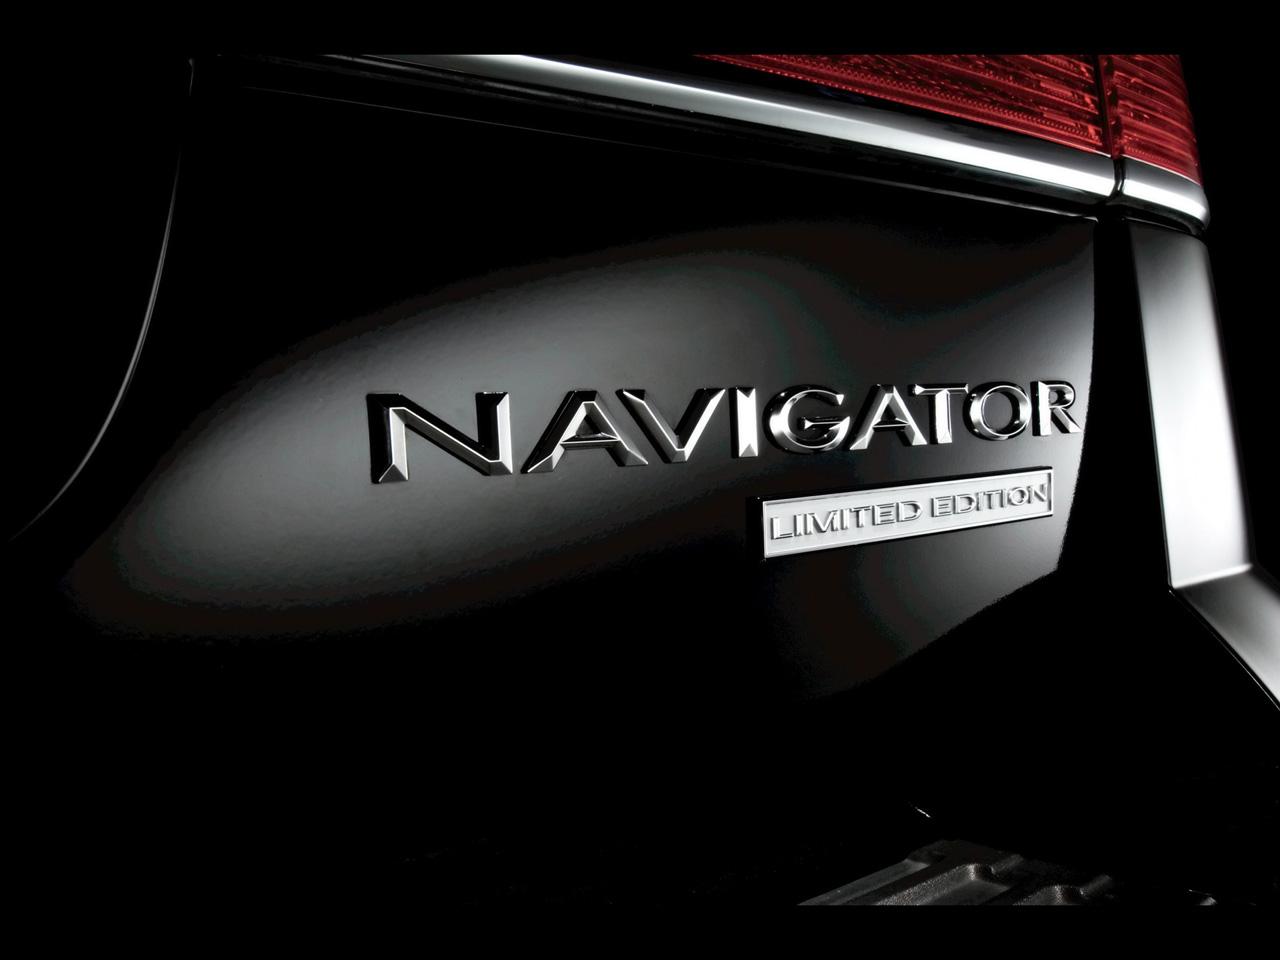 Lincoln Navigator